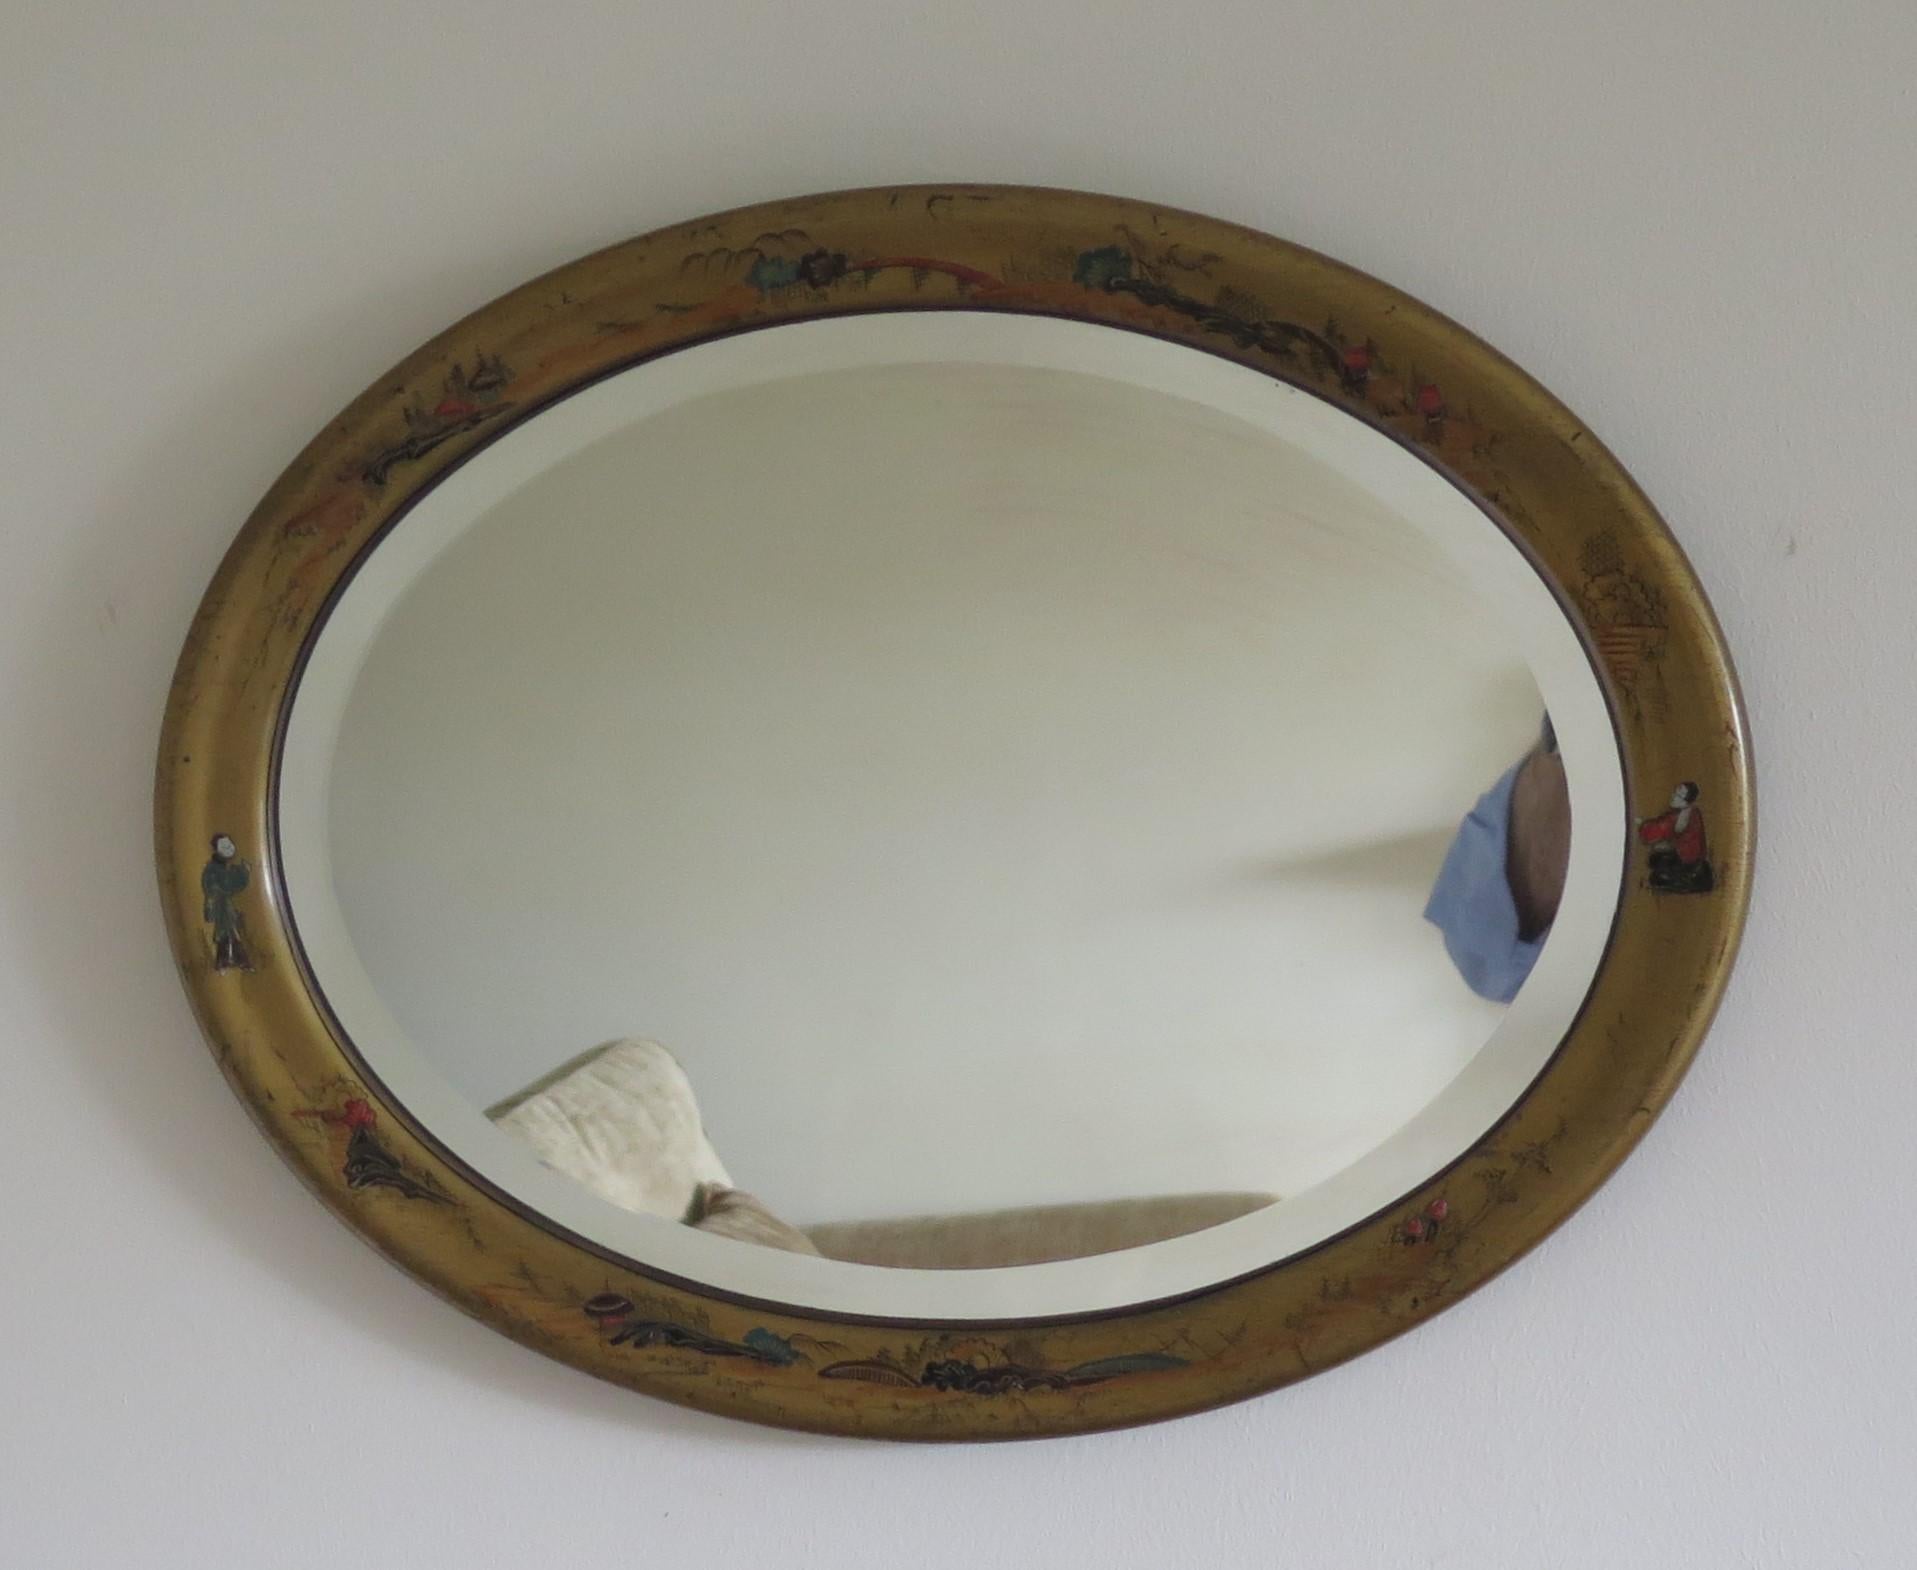 Dies ist ein sehr guter ovaler Wandspiegel mit handgemaltem Chinoiserie-Dekor auf dem Rahmen und einem schrägen Spiegelglas aus der Zeit der Jahrhundertwende um 1900.

Der ovale Rahmen ist aus vergoldetem Holz gefertigt und mit handgemalten